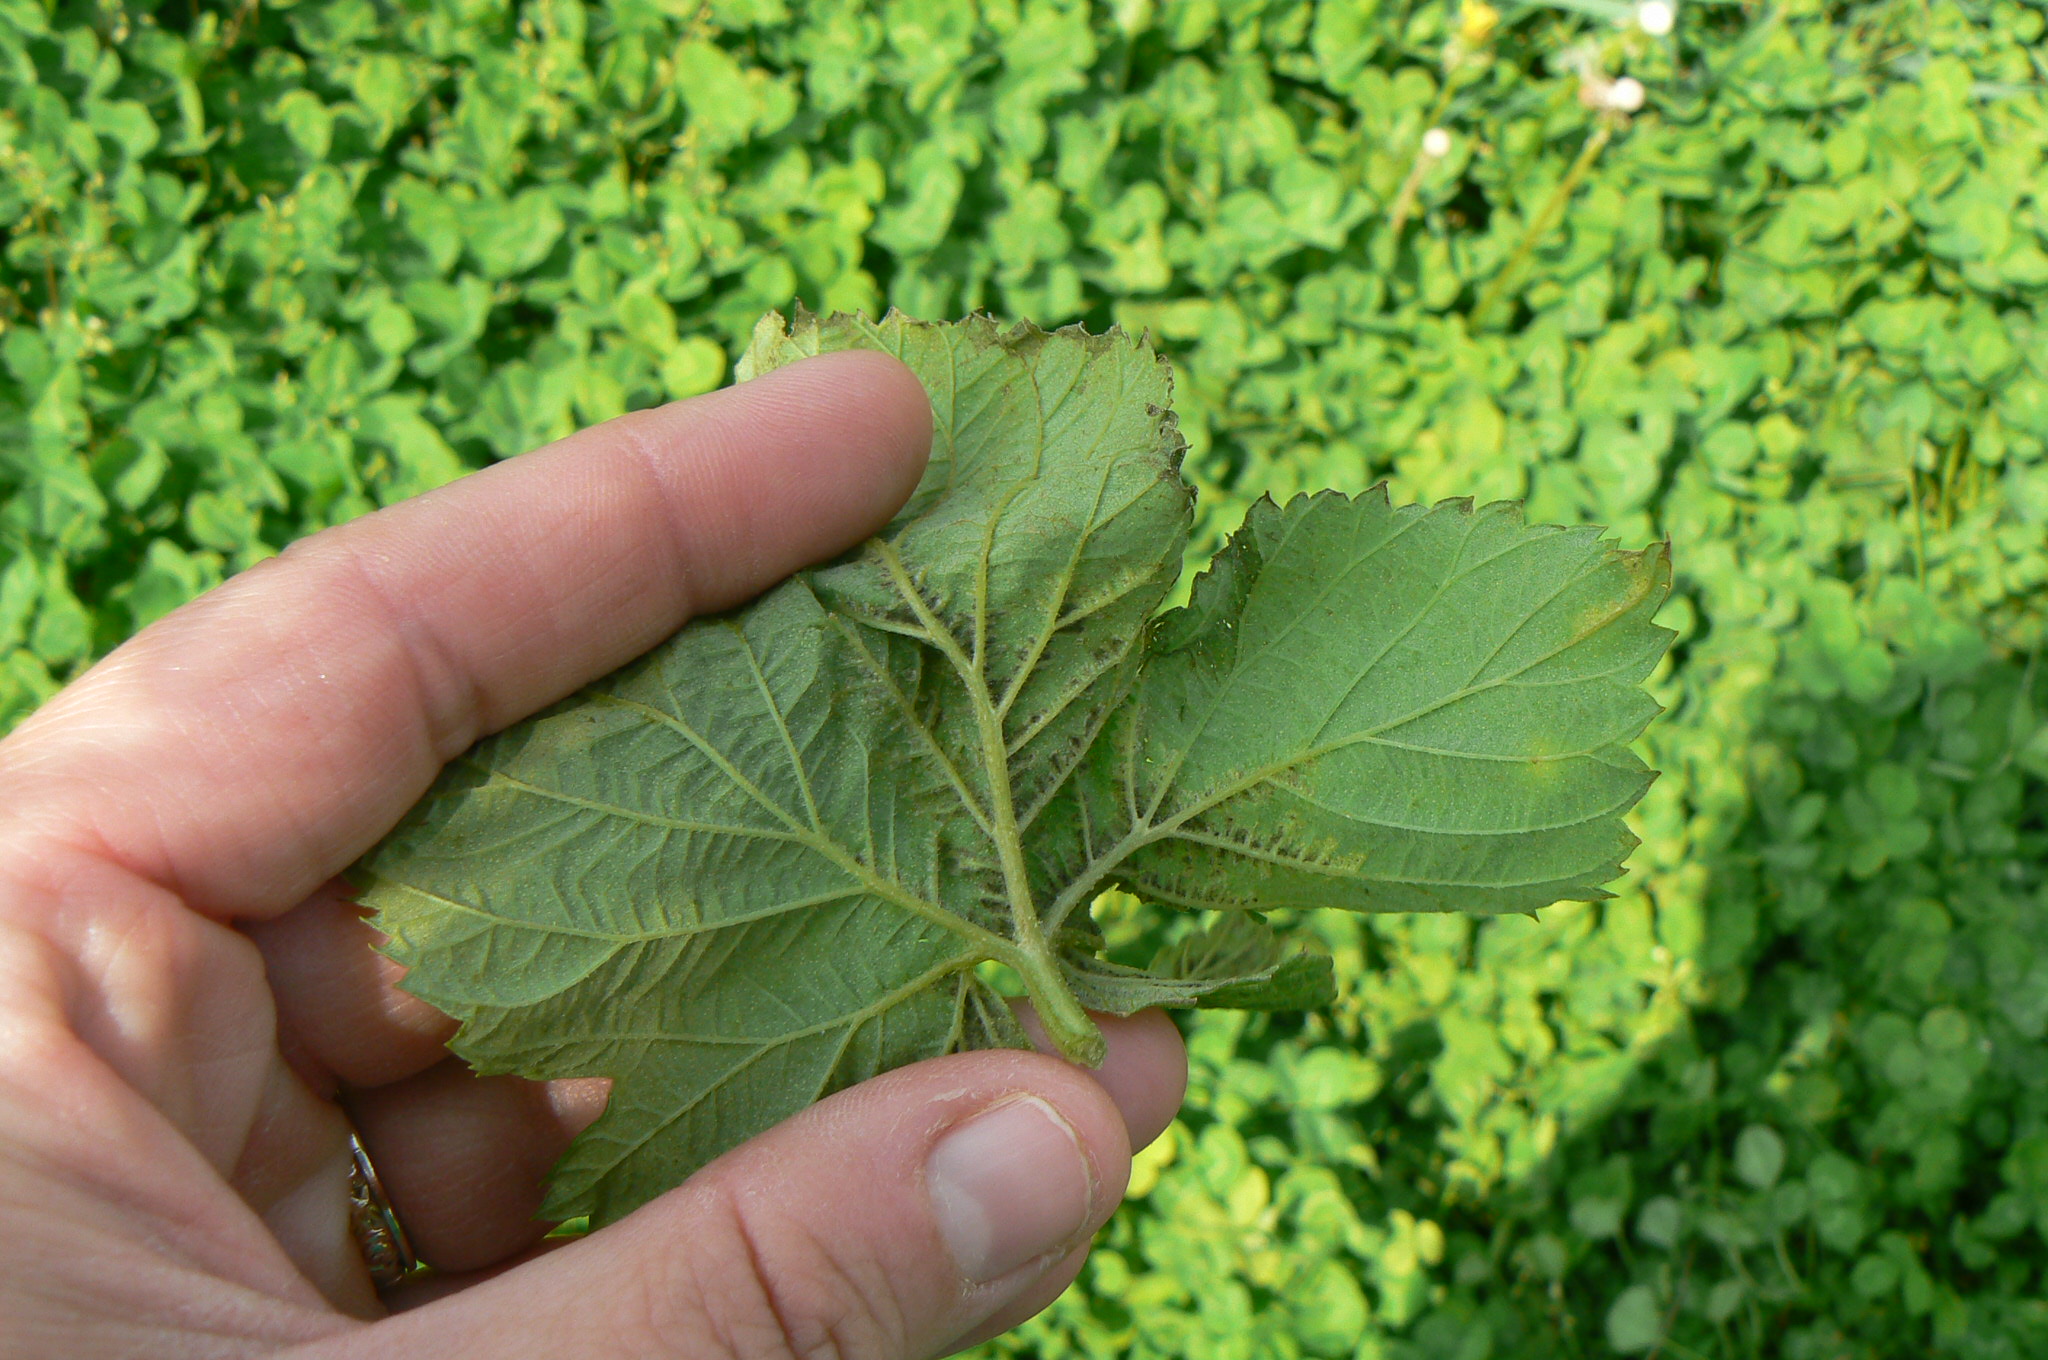 Sporulation associated with chlorotic tissue on underside of mottled leaf.